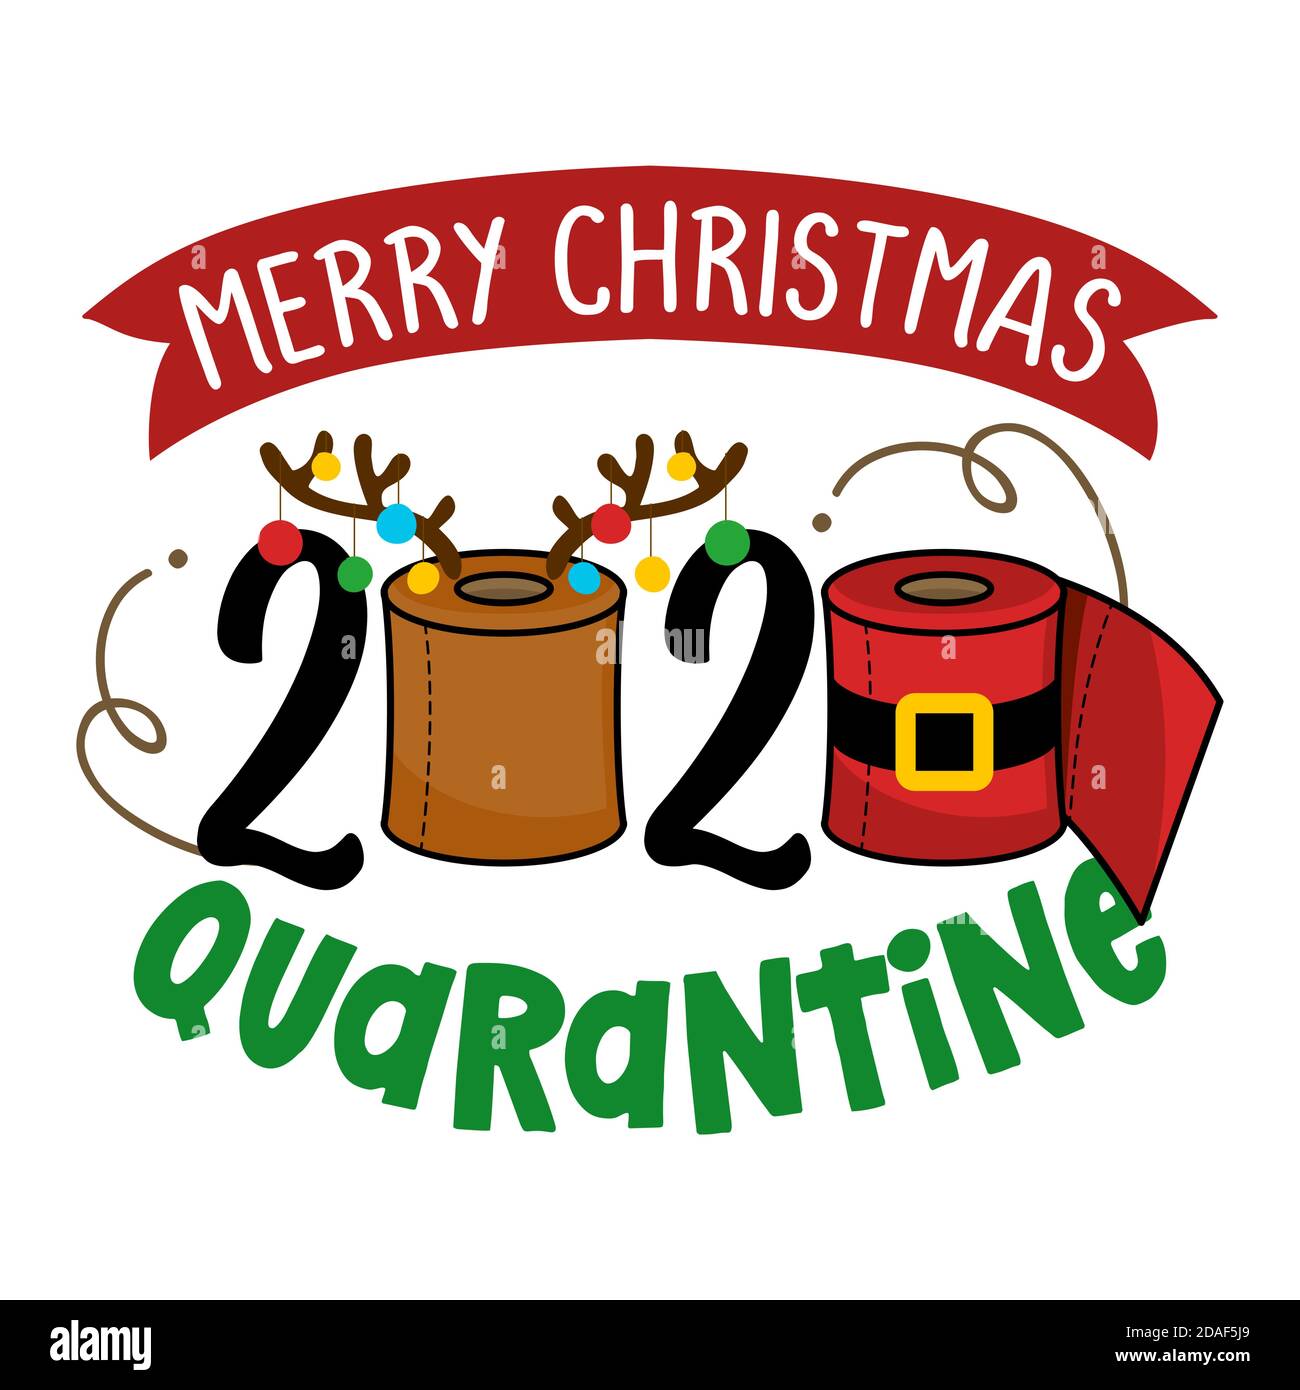 Merry Christmas 2020 Quarantine - Cartoon Doodle Zeichnung Toilettenpapier  in Santa Kostüm und mit Rentier Geweih. Text für Zeiten der  Selbstquarantäne. Xma Stock-Vektorgrafik - Alamy